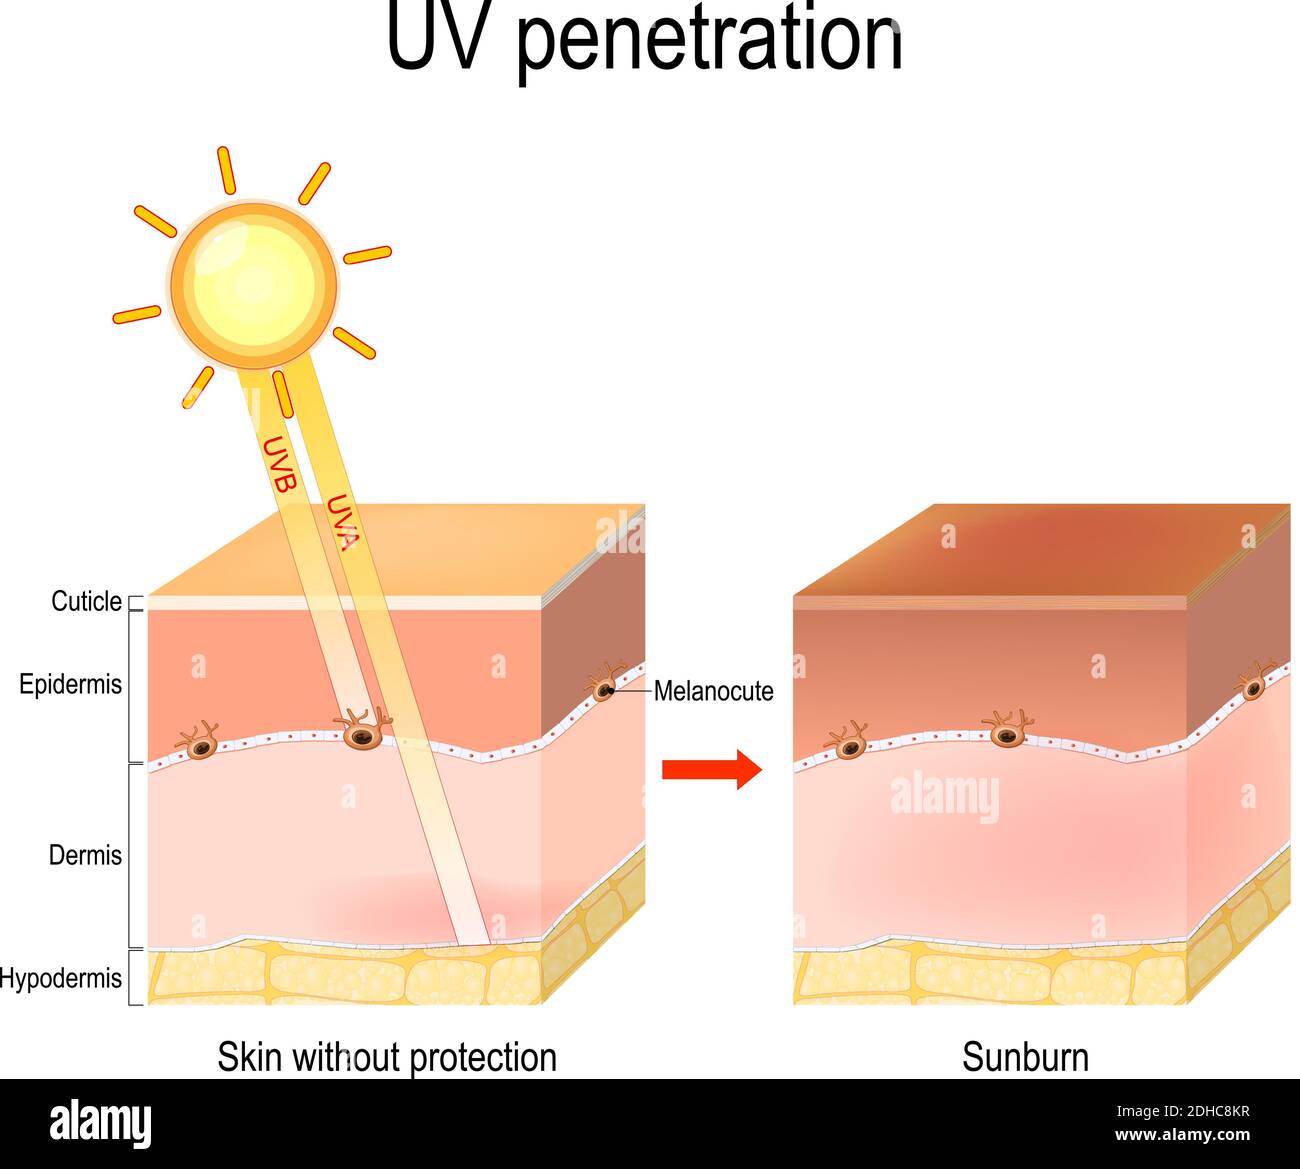 penetrazione uv negli strati della pelle umana. I raggi UVB non penetrano nella pelle in profondità, poiché sono bloccati dall'epidermide. UVA penetrano Illustrazione Vettoriale